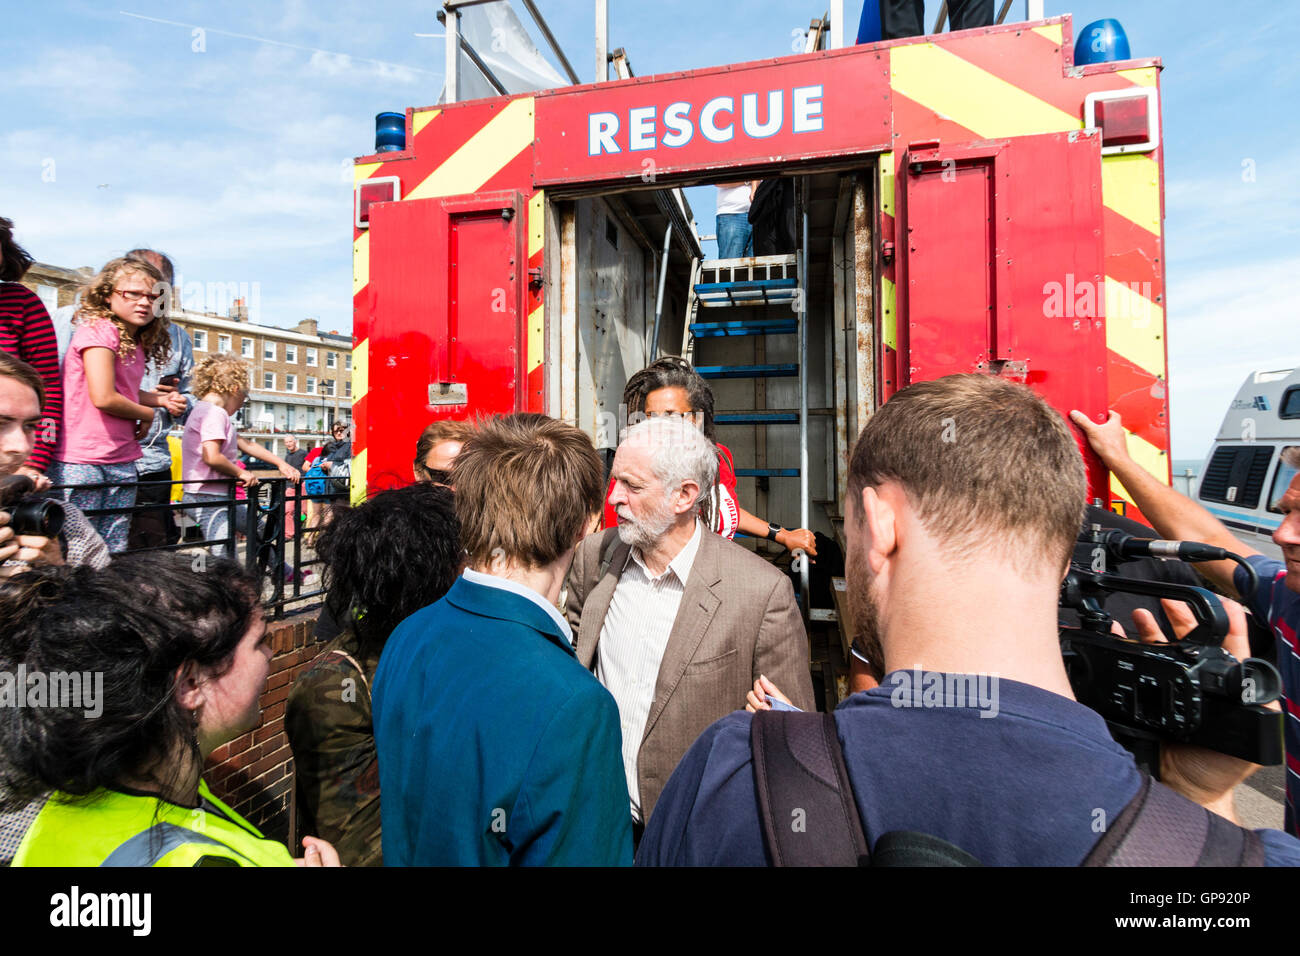 Jeremy Corbyn, Labour Party leader, verlässt die Feuerwehr rede Plattform nach einer Rede in Ramsgate als Teil einer Thanet Momentum Rallye. Menschen und Medien, die versuchen, in der Nähe zu bekommen. Stockfoto